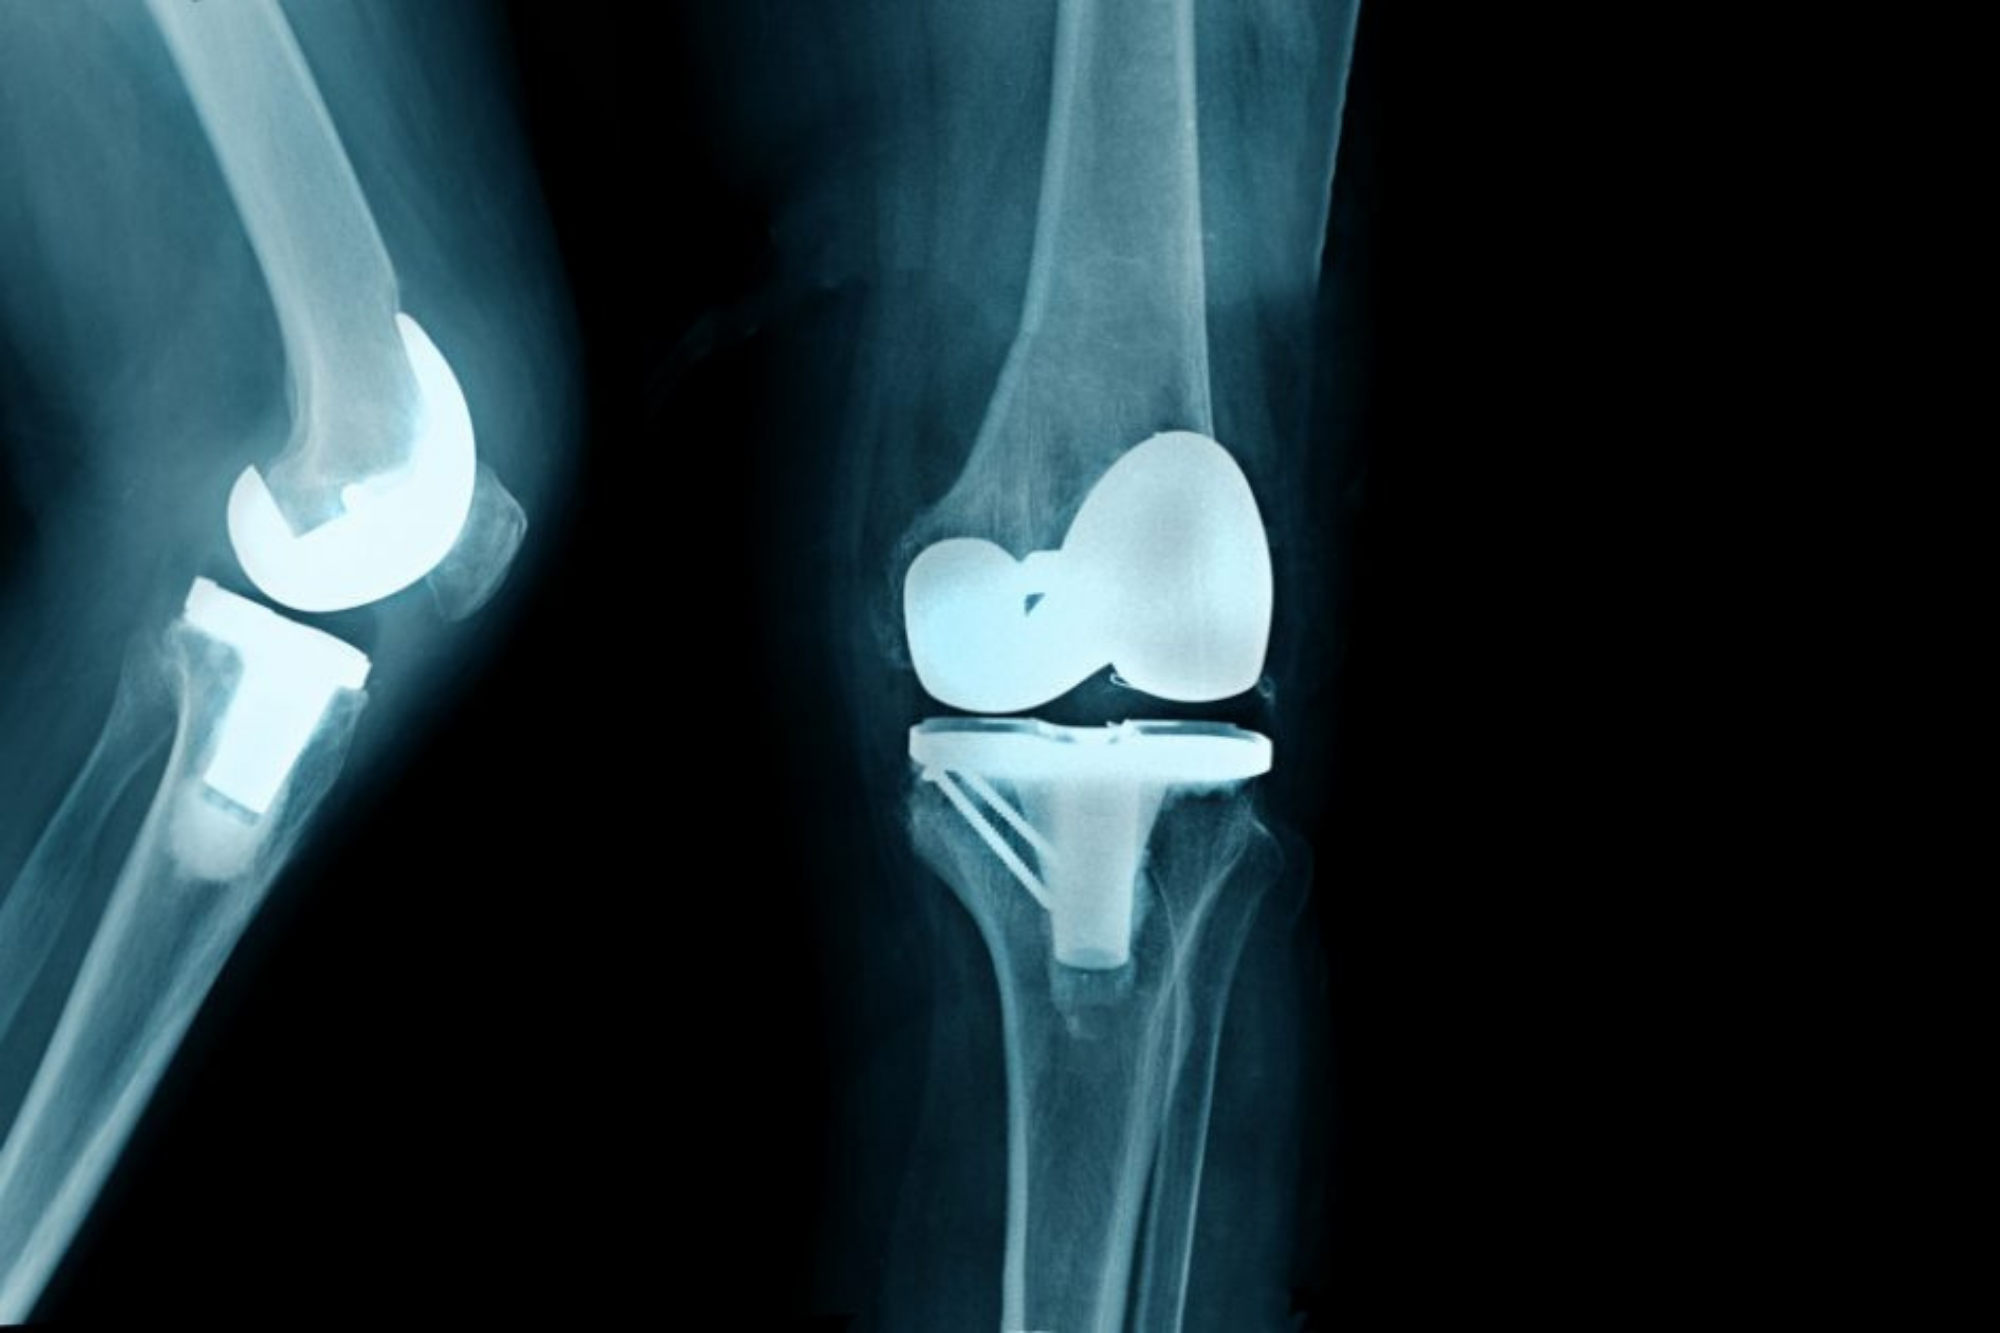 Total diz Protezi x ray. Операция по замене коленного сустава москва